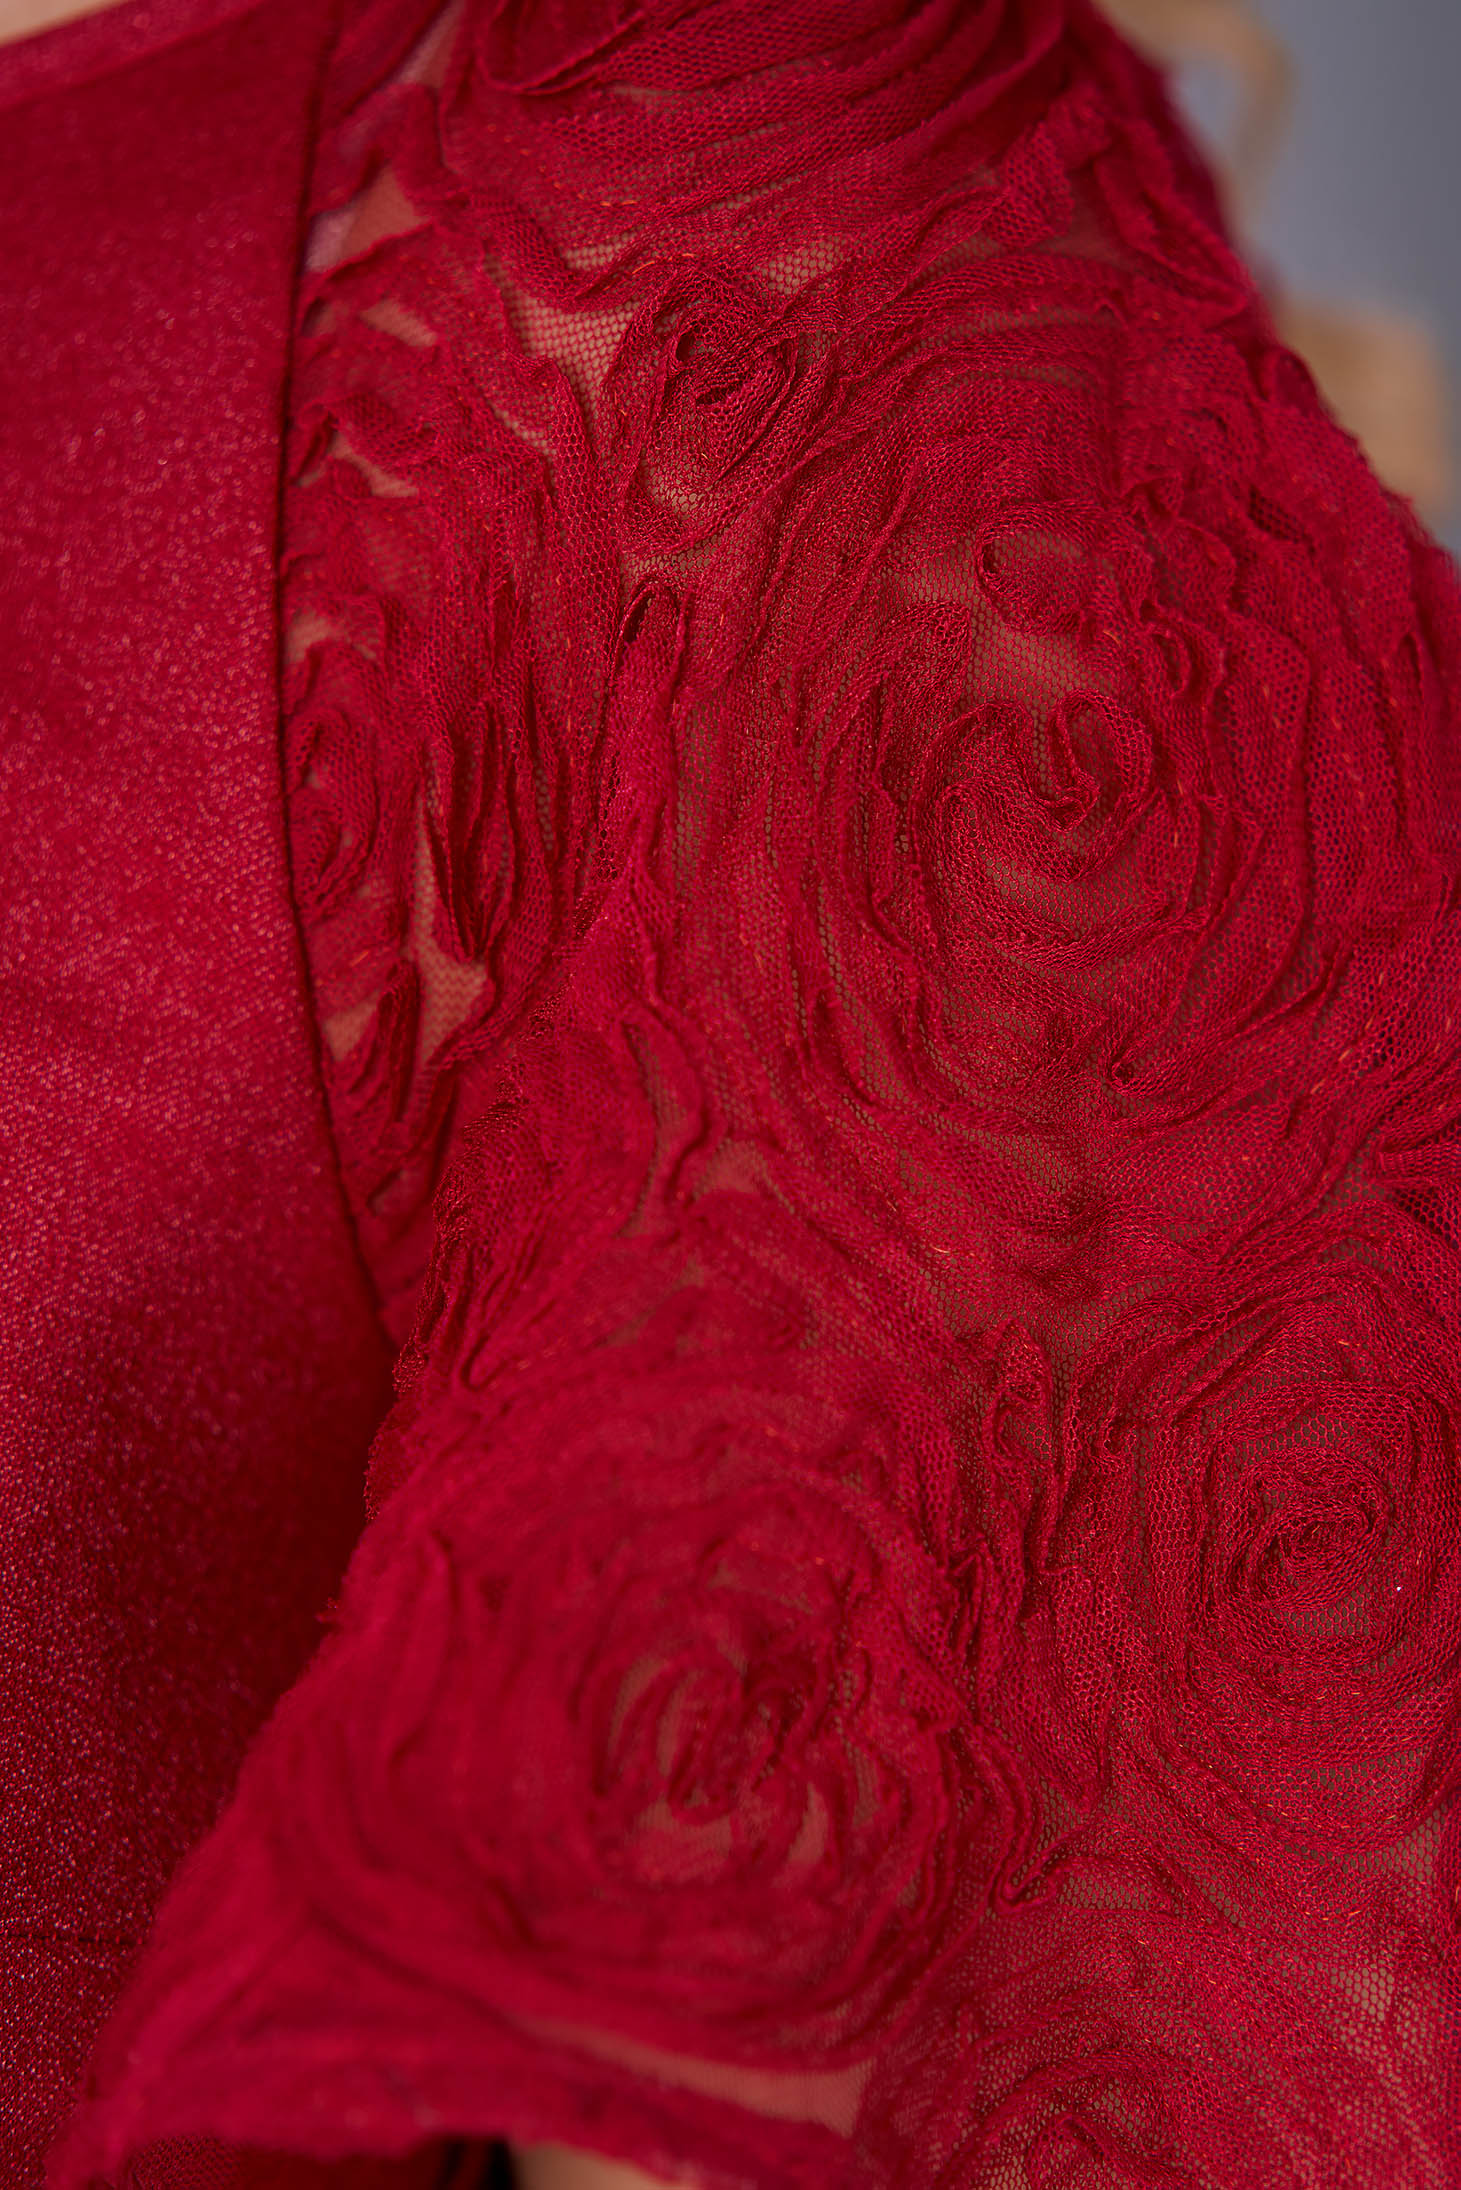 Málnapiros elegáns rövid egyenes StarShinerS ruha rugalmas anyagból 3d virágos díszítéssel 3 - StarShinerS.hu